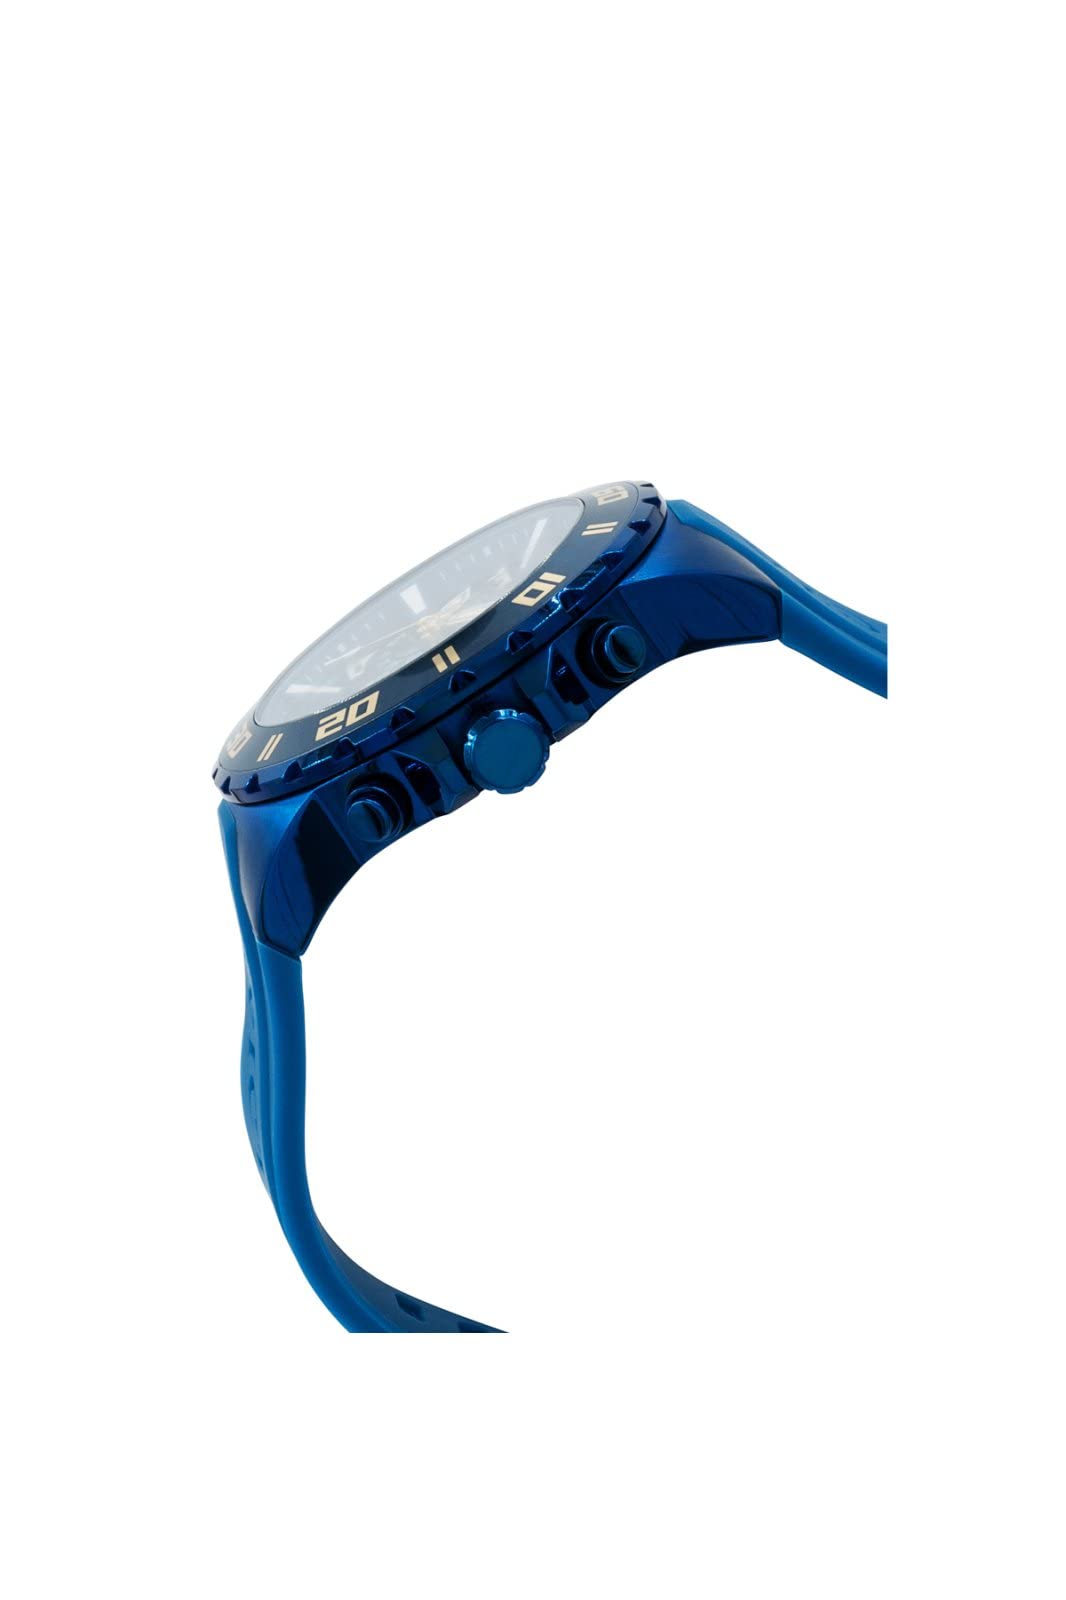 Invicta Men's Pro Diver 48mm Silicone Quartz Watch, Blue (Model: 37754)